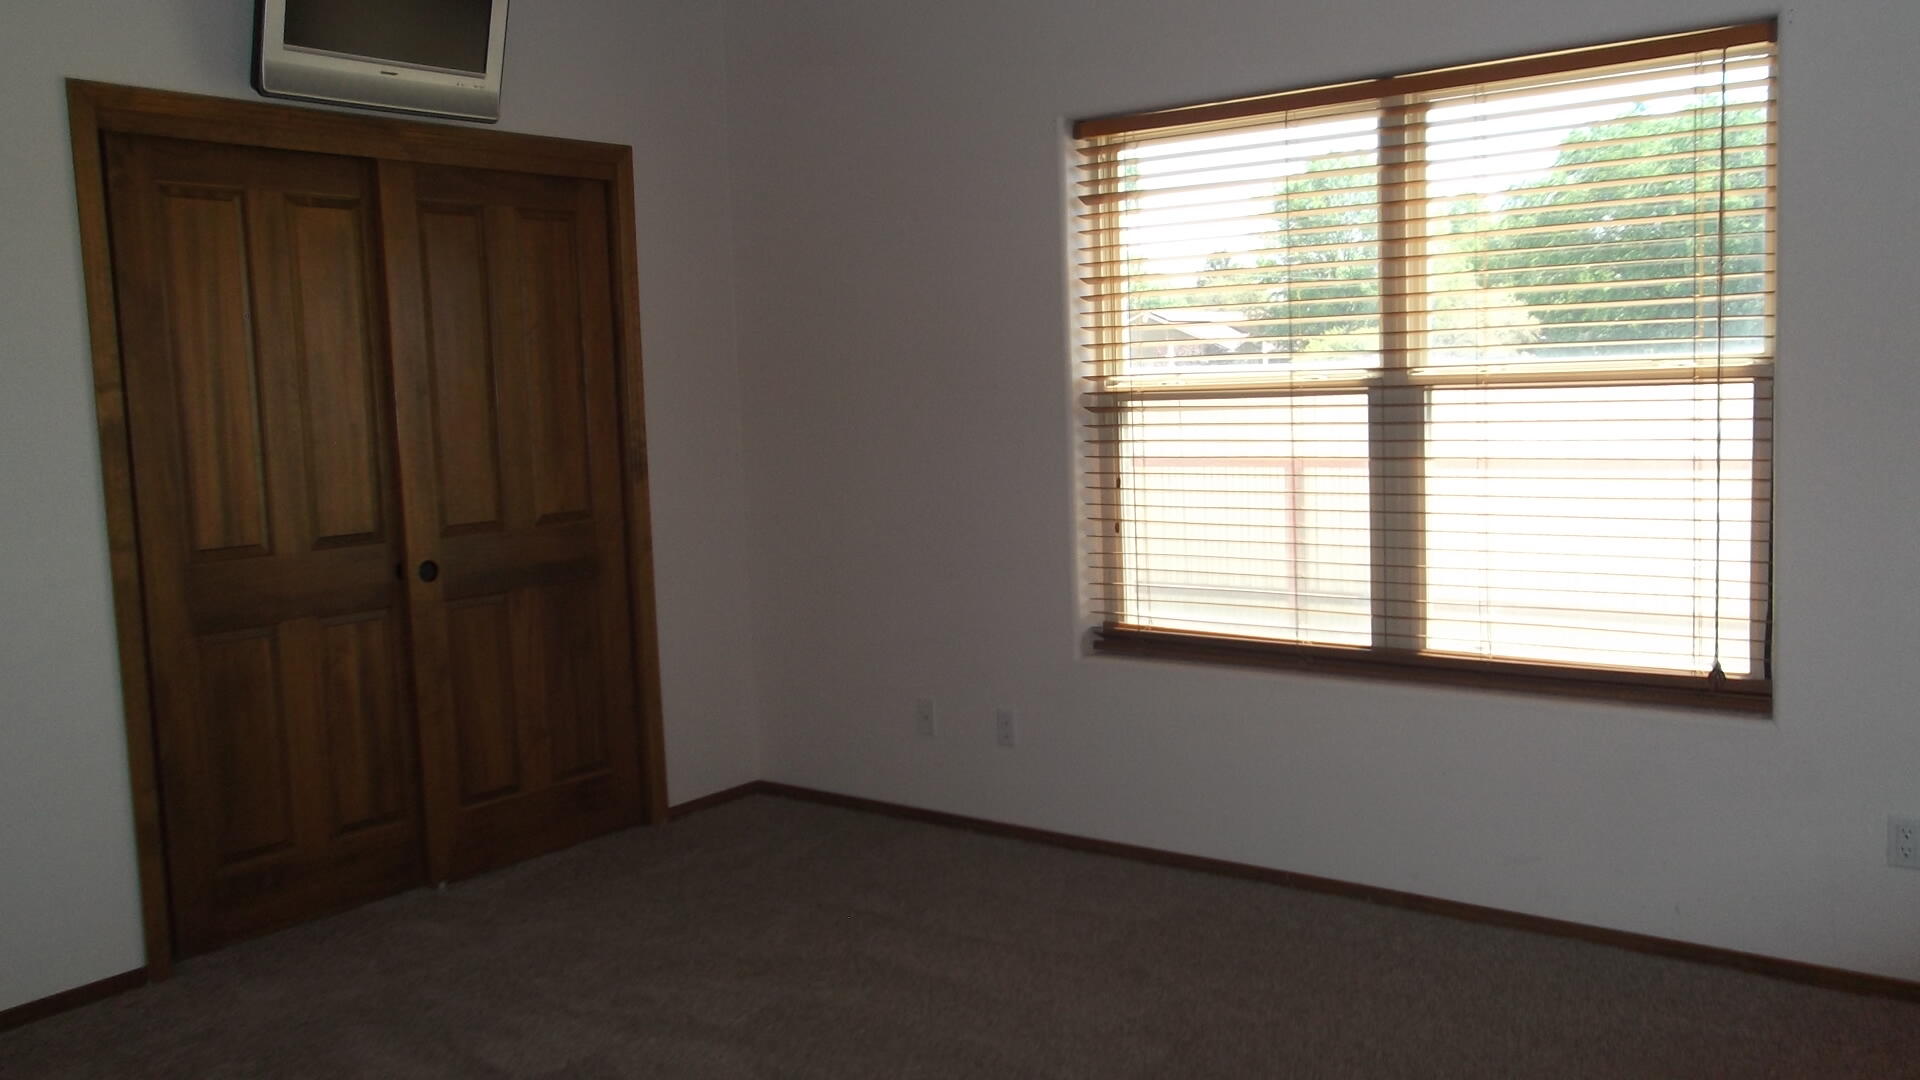 09 Schultz Lane, Belen, New Mexico 87002, 3 Bedrooms Bedrooms, ,2 BathroomsBathrooms,Residential,For Sale,09 Schultz Lane,1062216